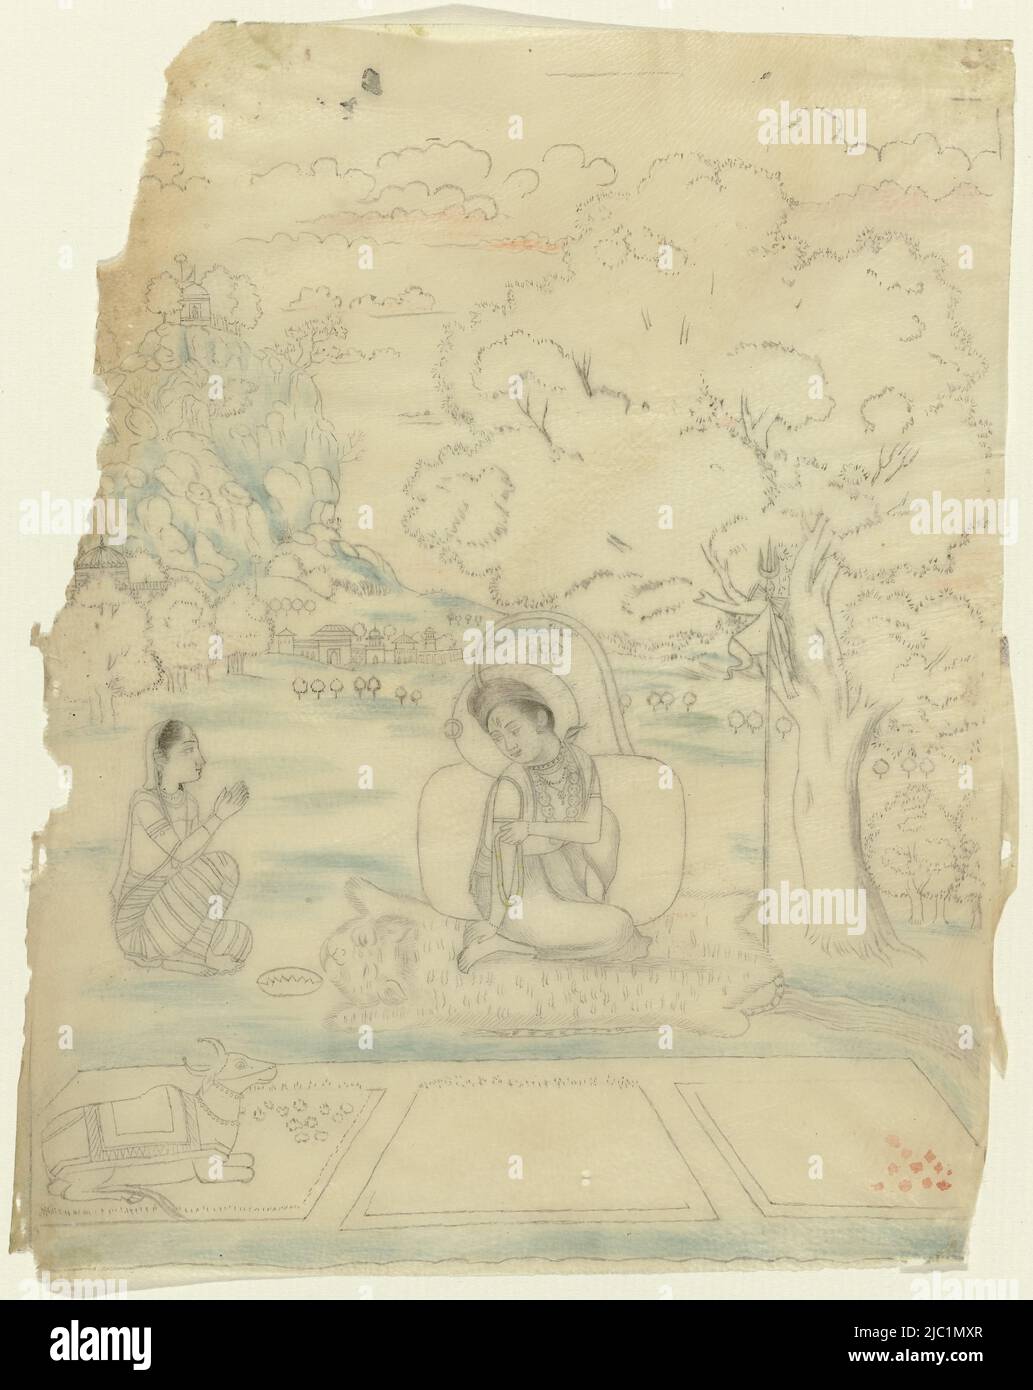 Shiva sitzt auf einer Tigerhaut mit einer Gebetsschnur in der linken Hand. Er hat einen Halbmondkranz hinter seinem Kopf. Der Fluss Ganges läuft mit einem Bogen von seinem Kopf auf den Boden. Eine Schlange dreht sich um seinen Hals und eine Kette von Schädeln hängt um seinen Hals. Gegen einen Baum steht sein Dreizack mit Wimpel und Trommel daran befestigt. Parvati sitzt neben ihm mit seinen Händen in Anbetung. Links im Vordergrund befindet sich Shivas Reittier, der Bulle Nandi. Das Bild wird auf eine transparente Tierhaut aufgetragen, Bhairava ramini., Zeichner: Anonymous, India, 1750 - 1770, Papier, Pinsel, Pinsel, H 153 mm × B 125 mm Stockfoto